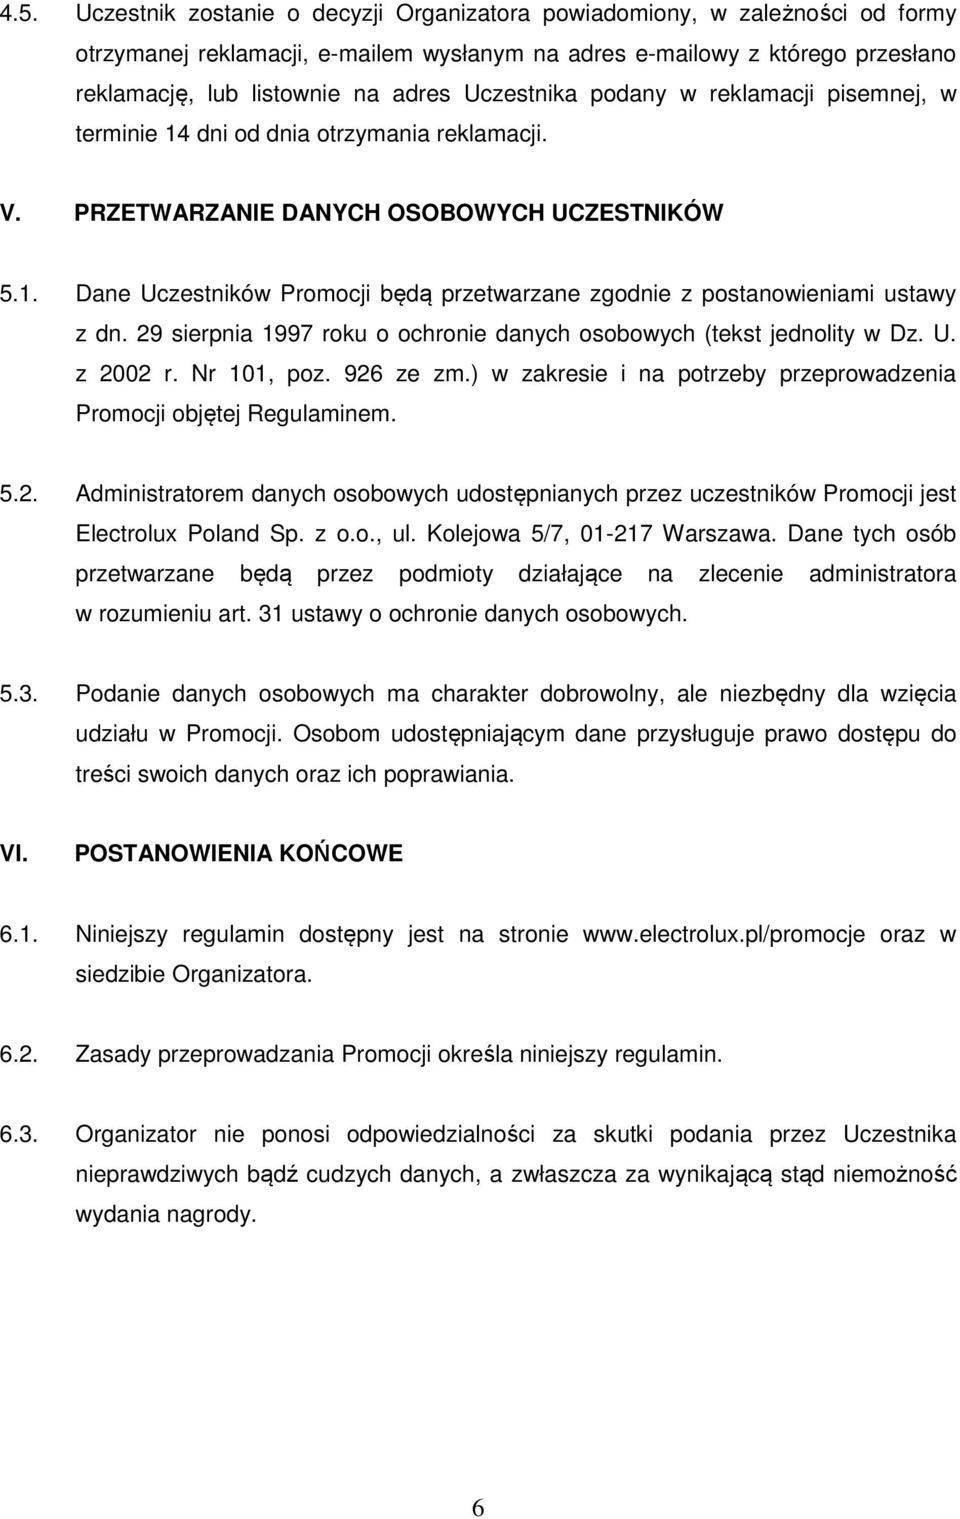 29 sierpnia 1997 roku o ochronie danych osobowych (tekst jednolity w Dz. U. z 2002 r. Nr 101, poz. 926 ze zm.) w zakresie i na potrzeby przeprowadzenia Promocji objętej Regulaminem. 5.2. Administratorem danych osobowych udostępnianych przez uczestników Promocji jest Electrolux Poland Sp.